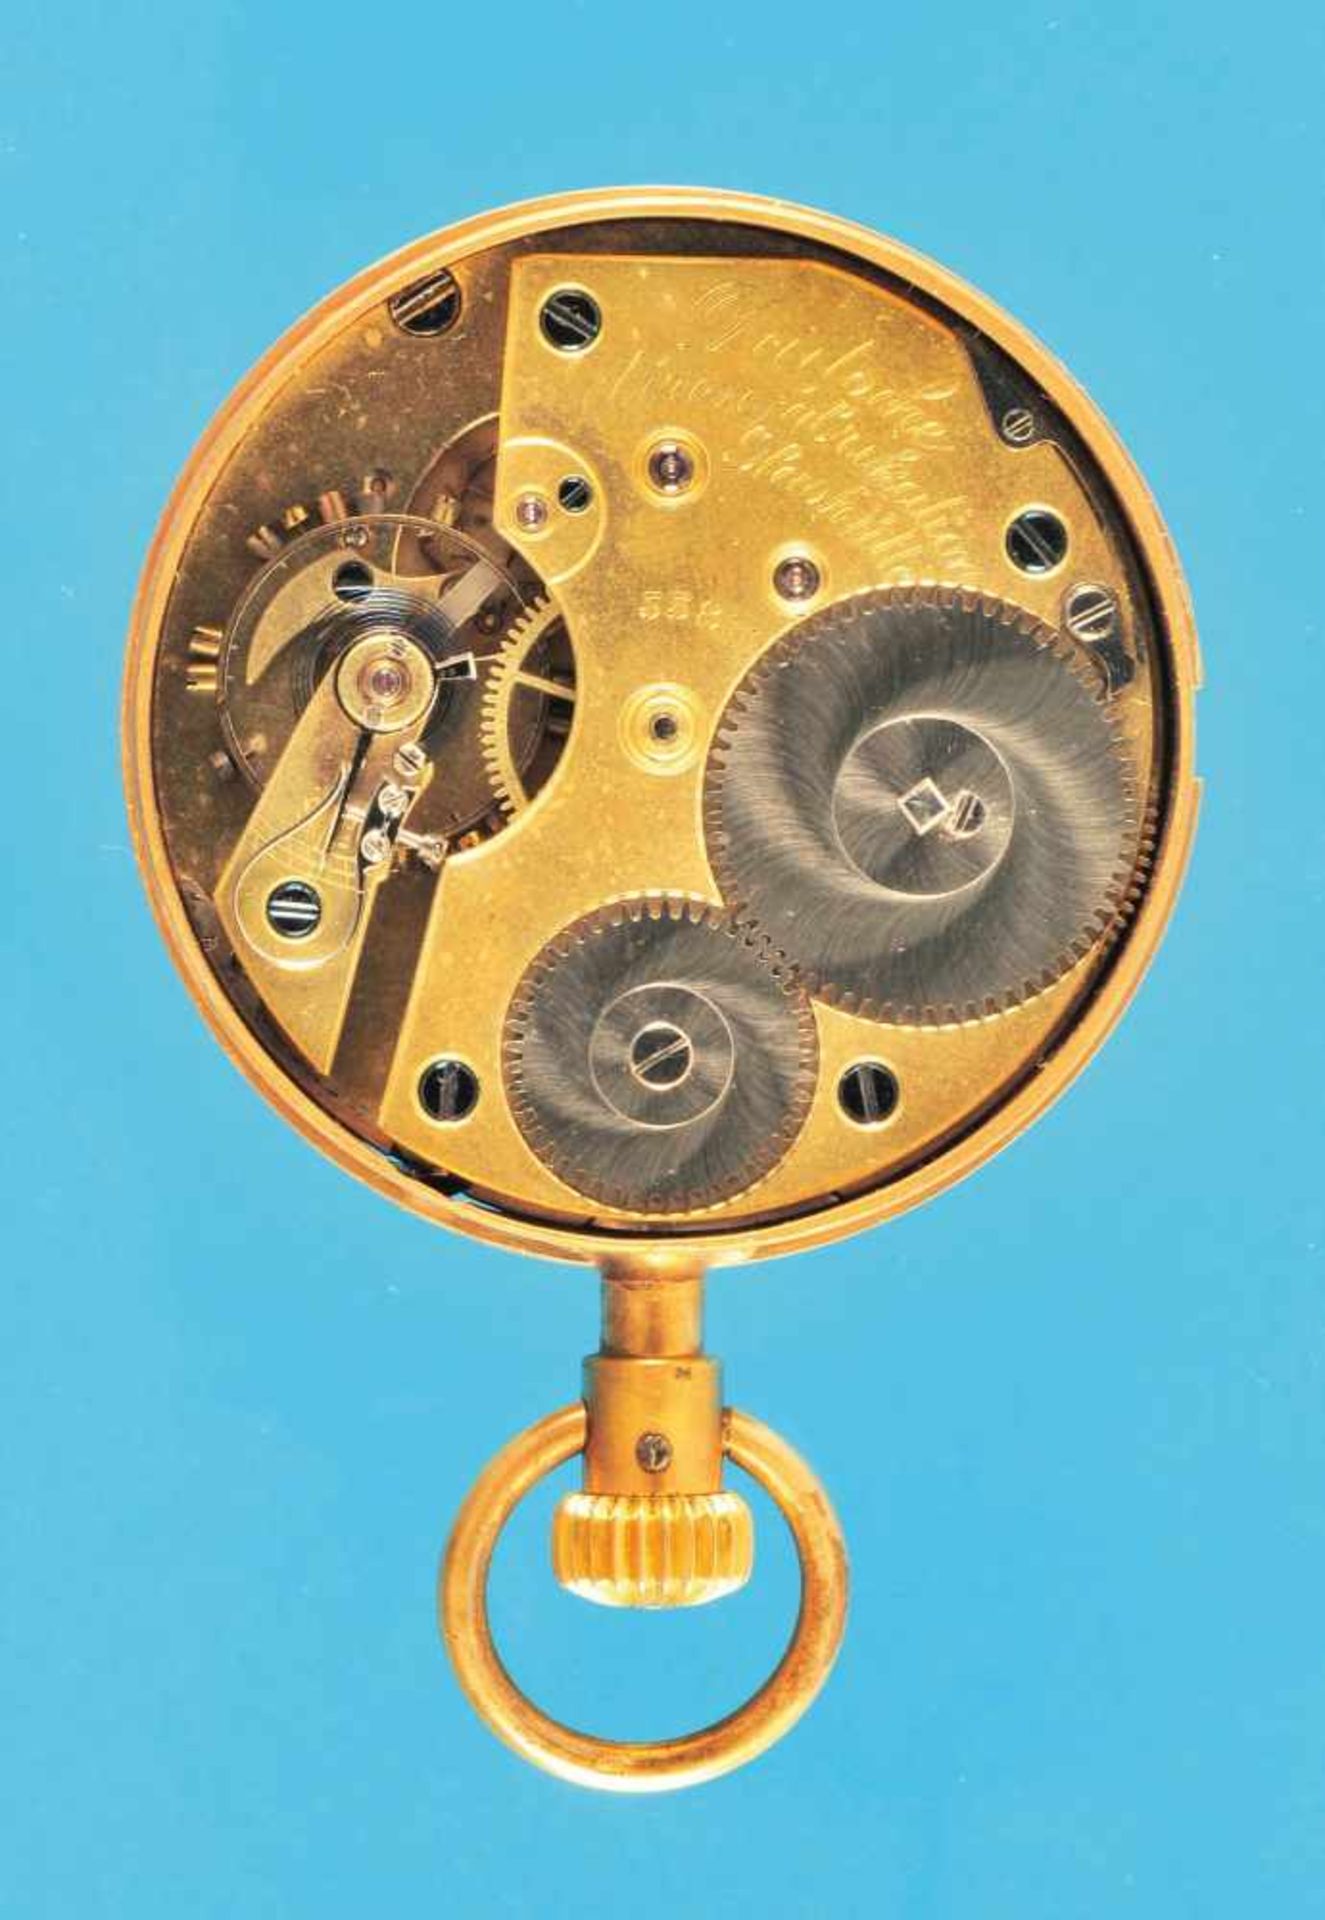 Taschenuhrwerk, Deutsche Uhrenfabrikation Glashütte i.Sa., A. Lange & Söhne, Nr. 55811, - Bild 2 aus 2